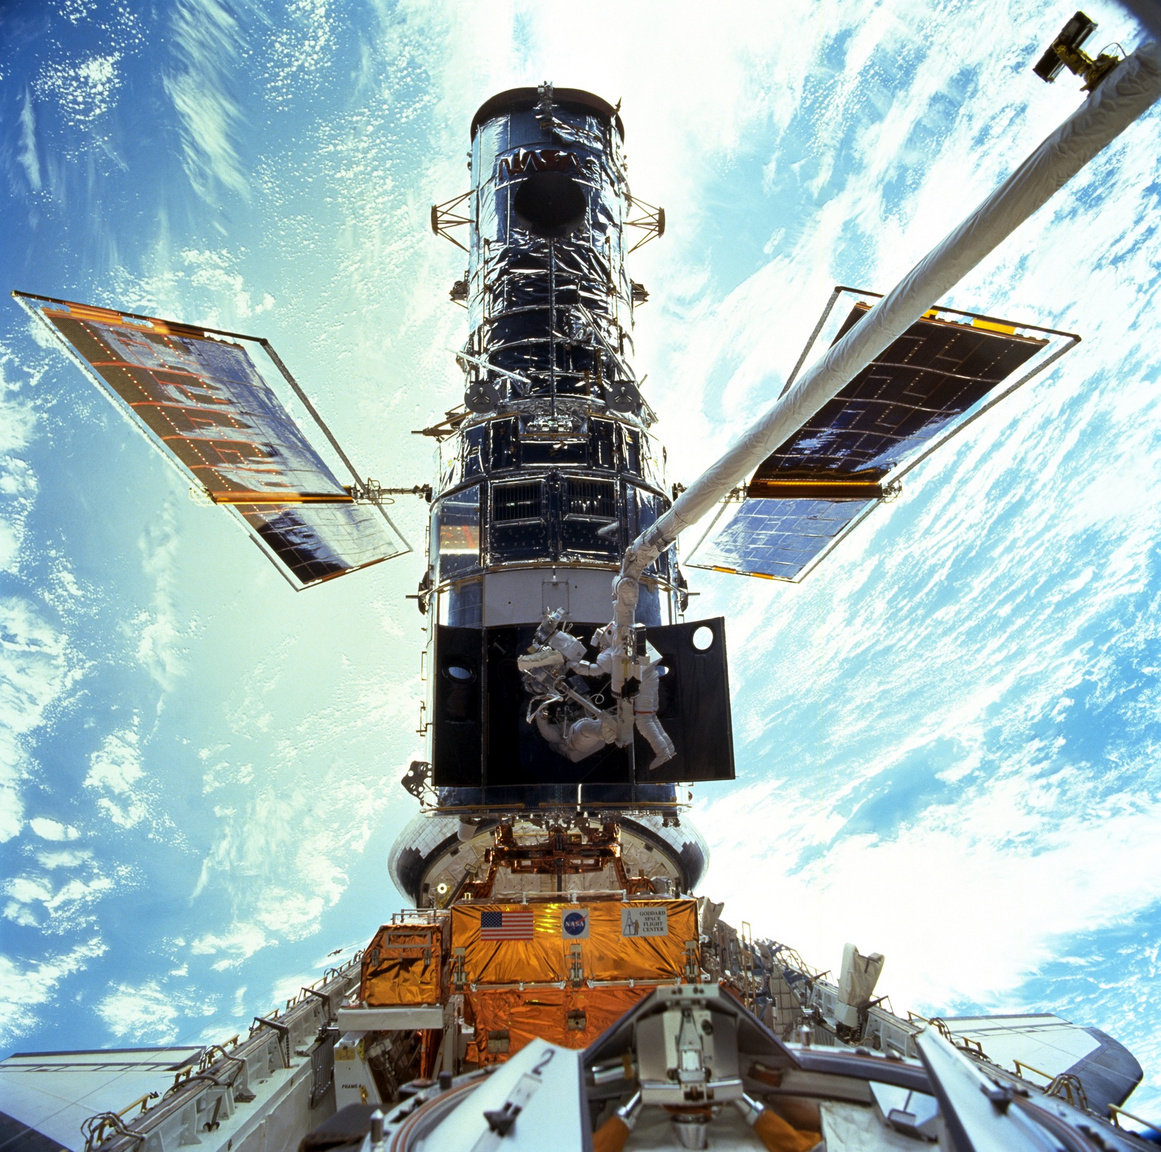 1999 decemberében zajlott a harmadik nagyjavítás, a rendkívül látványos fotón Steven L. Smith és John M. Grunsfeld űrhajósok láthatóak, amint a Discovery űrsikló rakterébe vont teleszkópon dolgoznak.